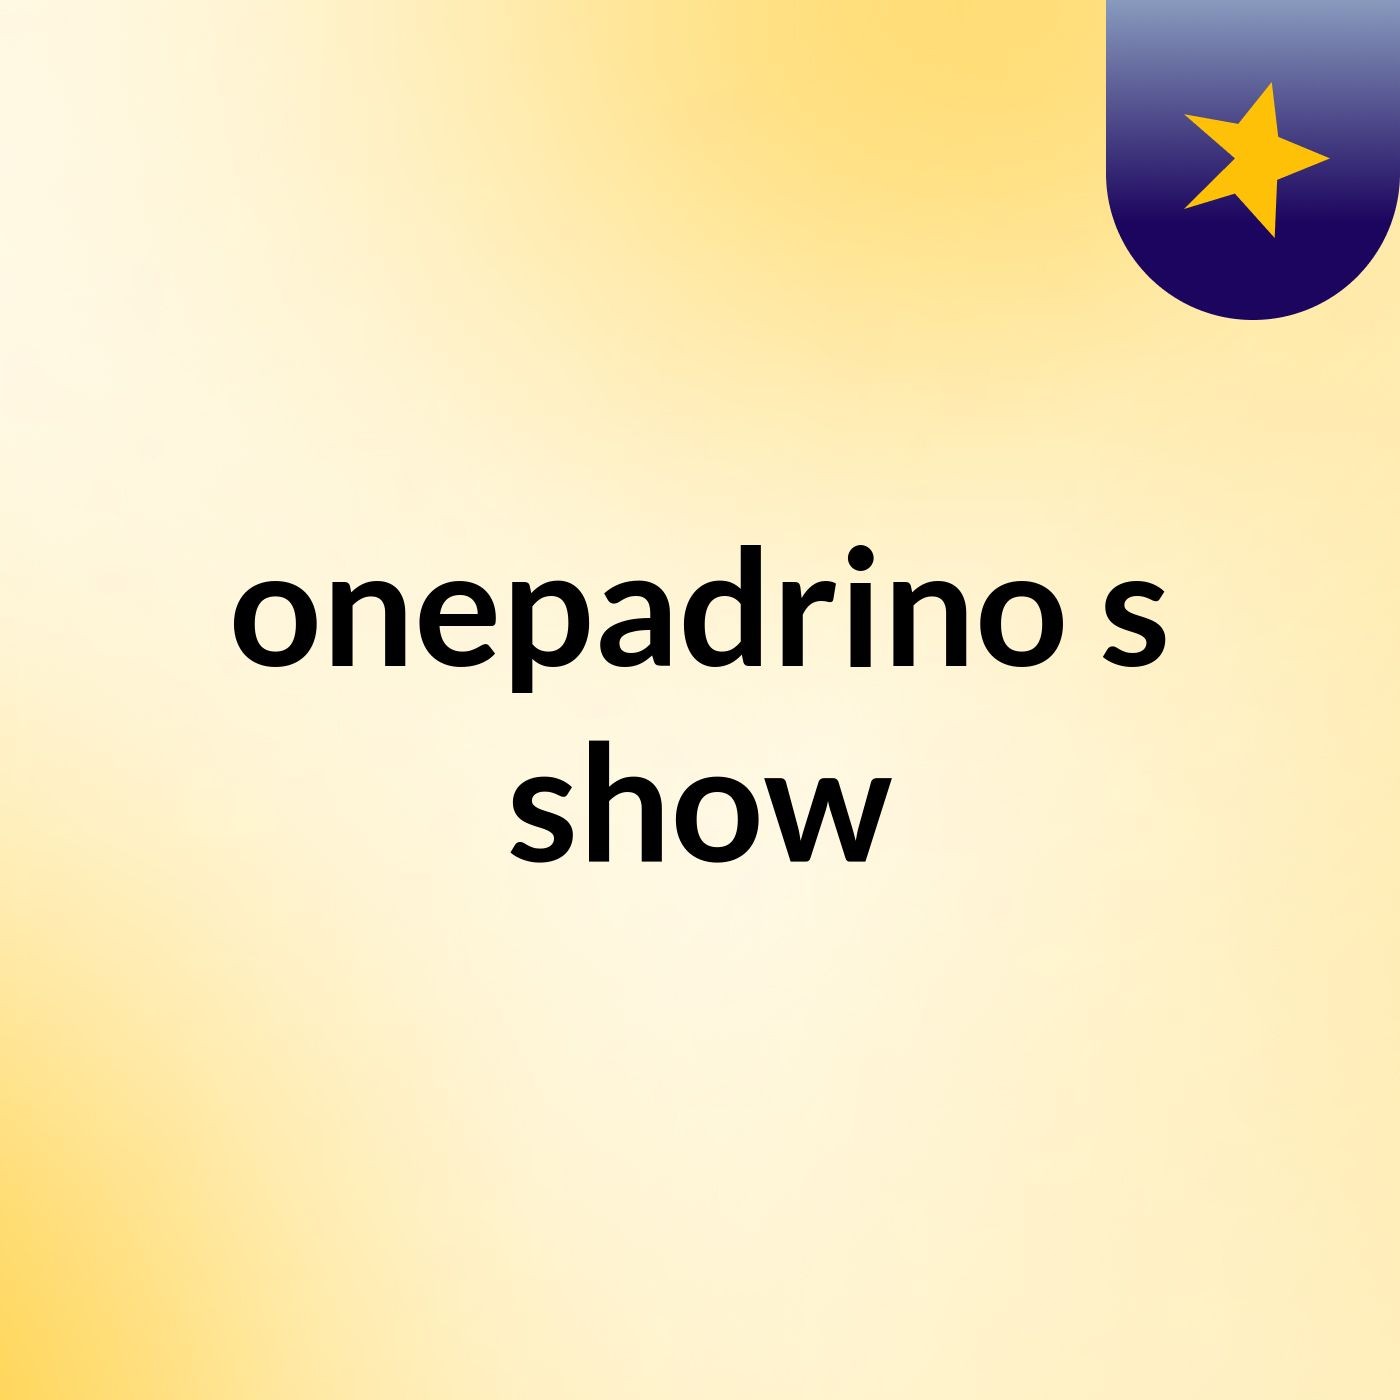 onepadrino's show